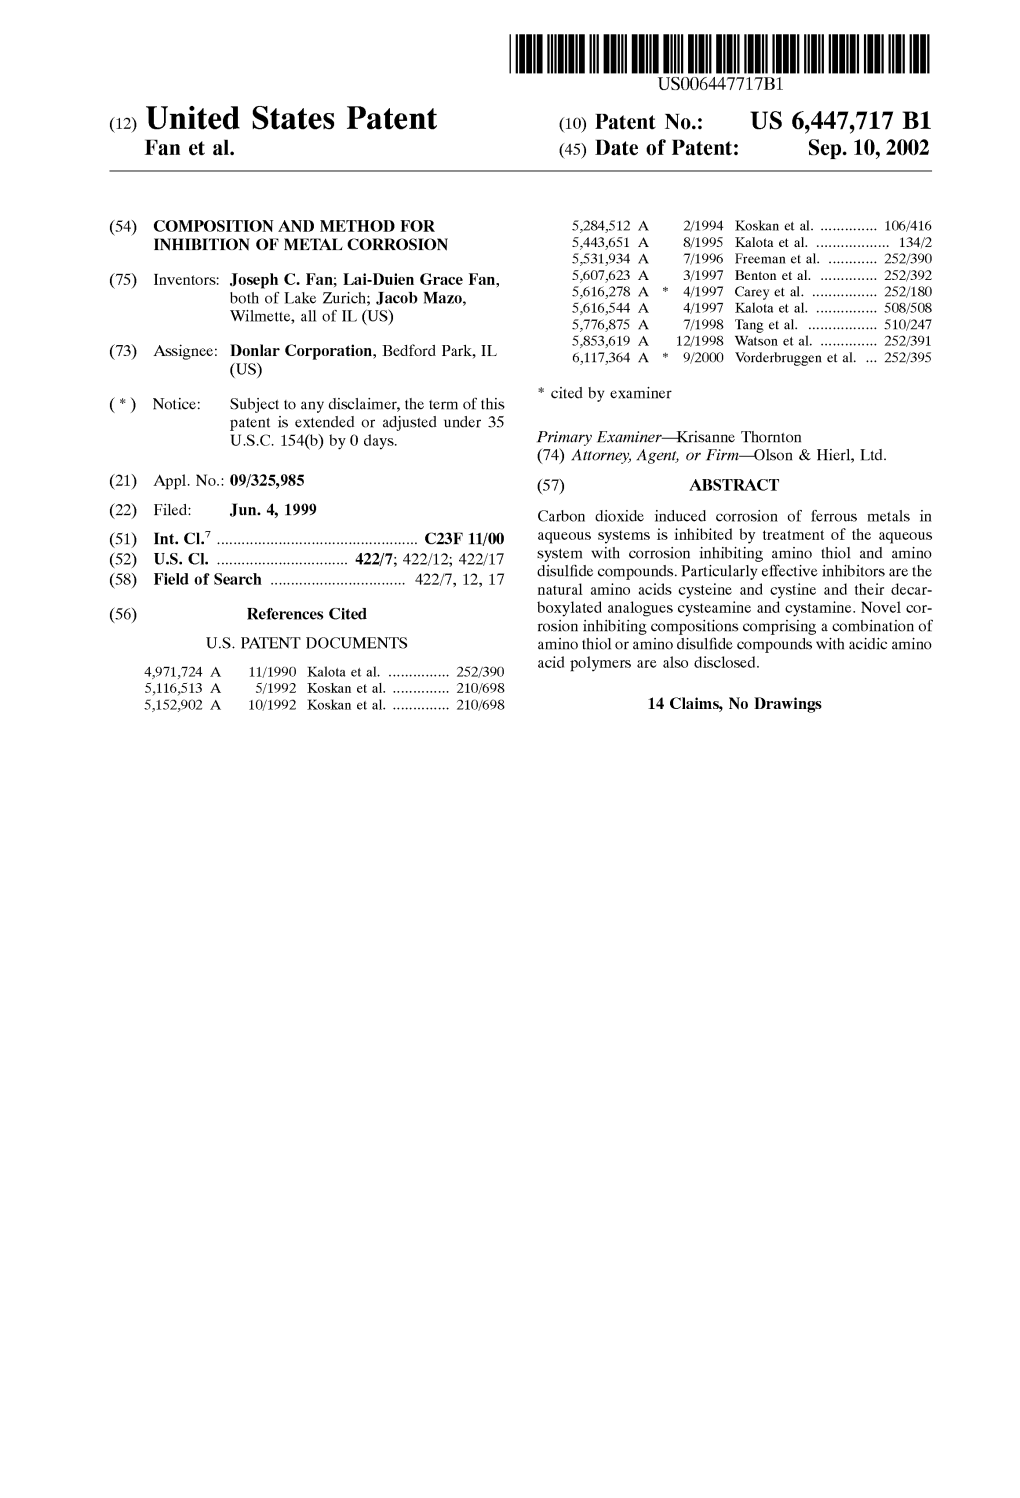 (12) United States Patent (10) Patent No.: US 6,447,717 B1 Fan Et Al